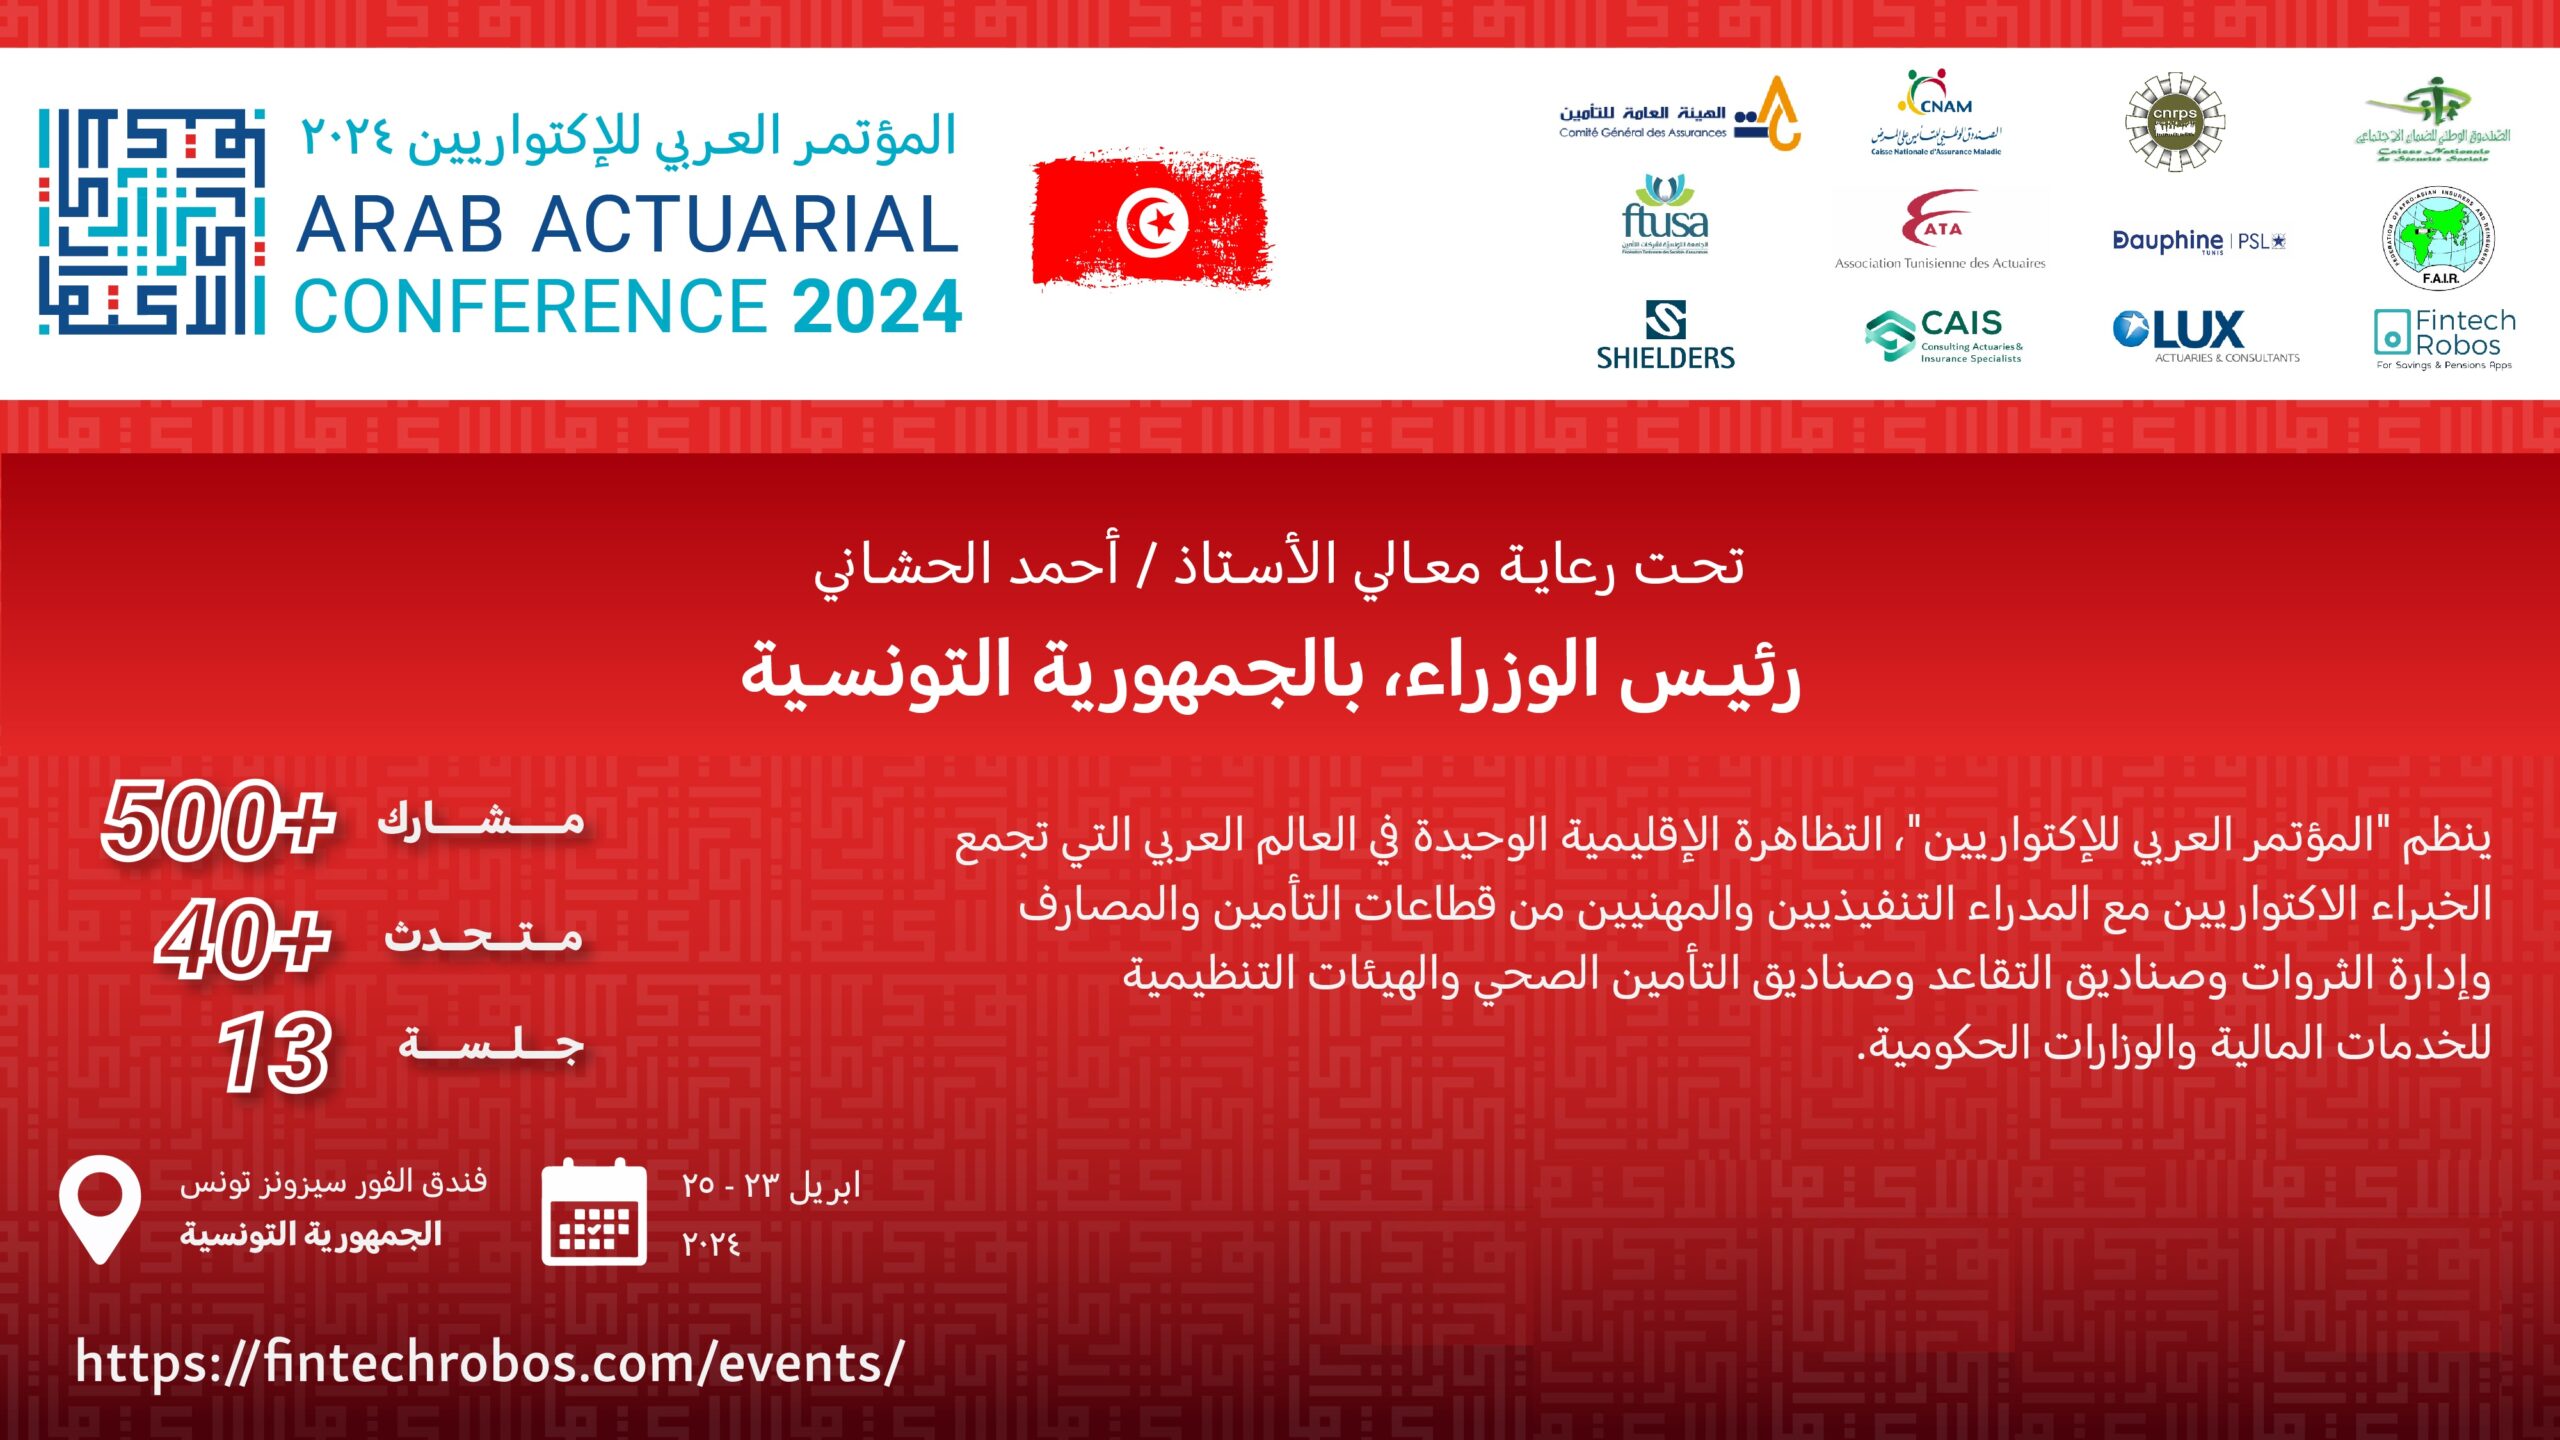 المؤتمر العربي للخبراء الاكتواريين يومي 23 و25 أفريل 2024 بتونس